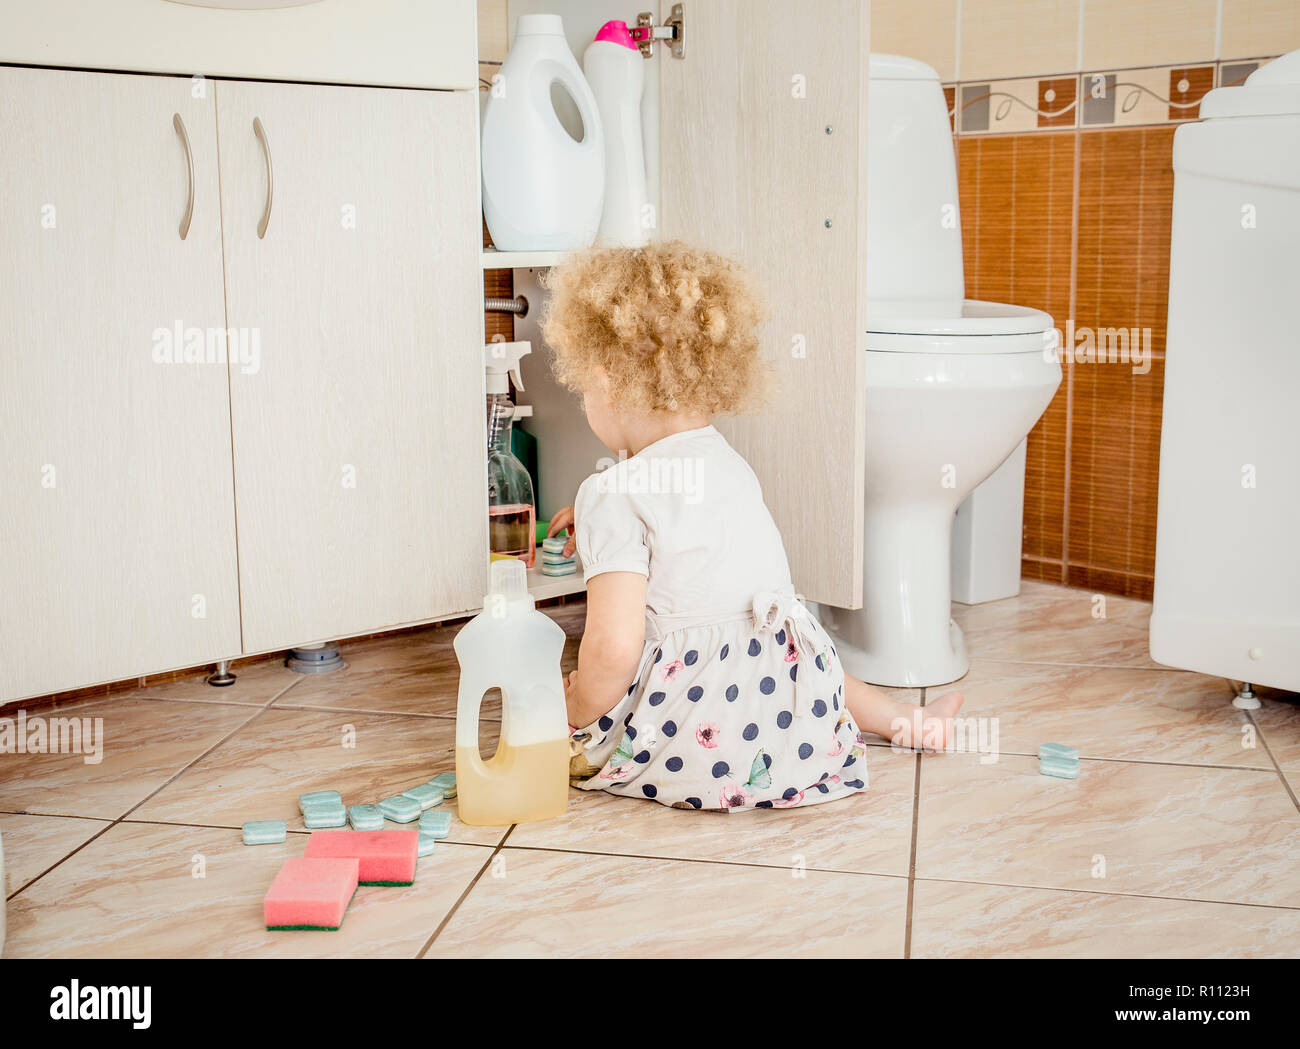 Unbeaufsichtigte Mädchen spielen in ruhige Lage, Bad mit gefährliche Haushaltschemikalien. Gefährdung der Sicherheit zu Hause Konzept. Fernhalten von der Kinder erreichen. Stockfoto